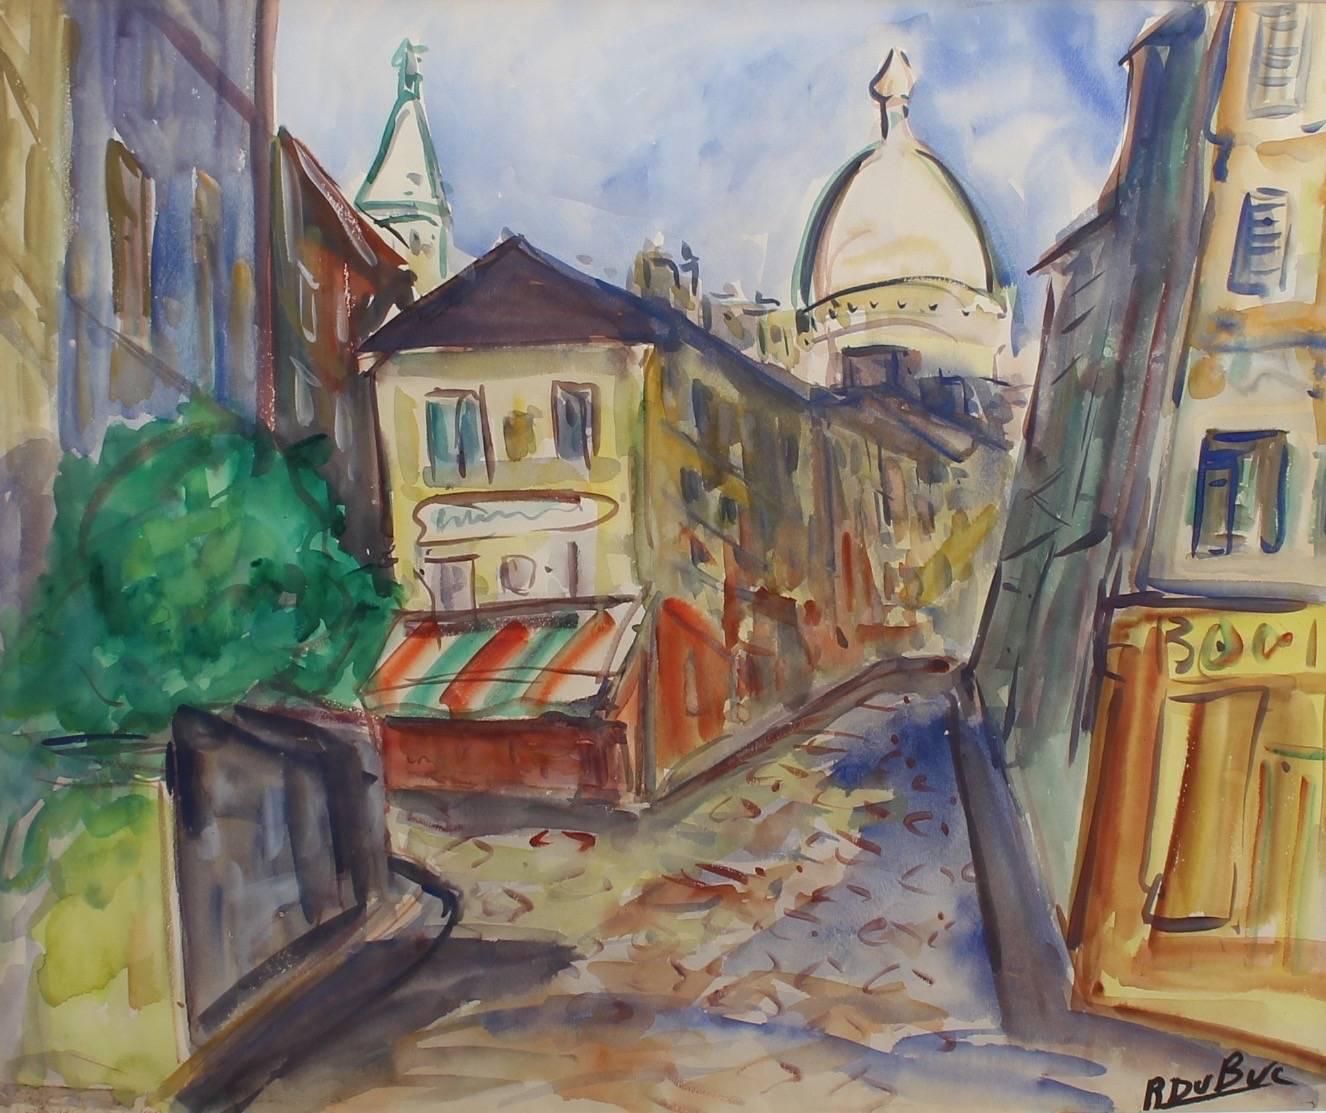 Roland DUBUC Landscape Painting - Montmartre View from Rue Lepic, Paris